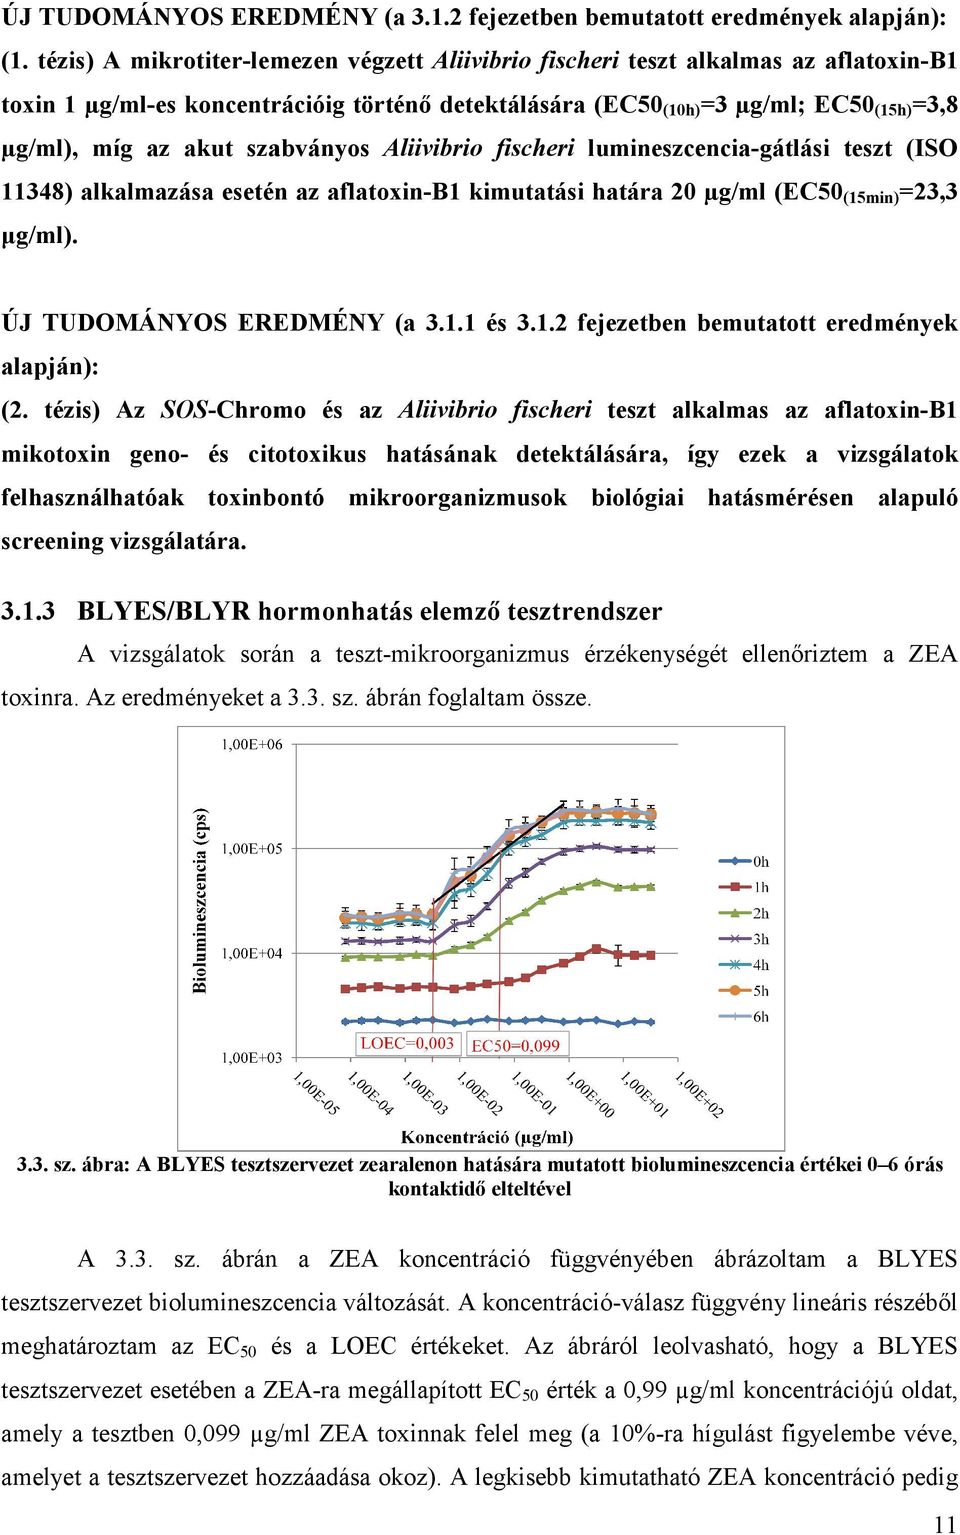 szabványos Aliivibrio fischeri lumineszcencia-gátlási teszt (ISO 11348) 1348) alkalmazása esetén az aflatoxin-b1 kimutatási határa 20 µg/ml (EC50 (15min) =23,3 µg/ml). ÚJ TUDOMÁNYOS EREDMÉNY (a 3.1.1 és 3.